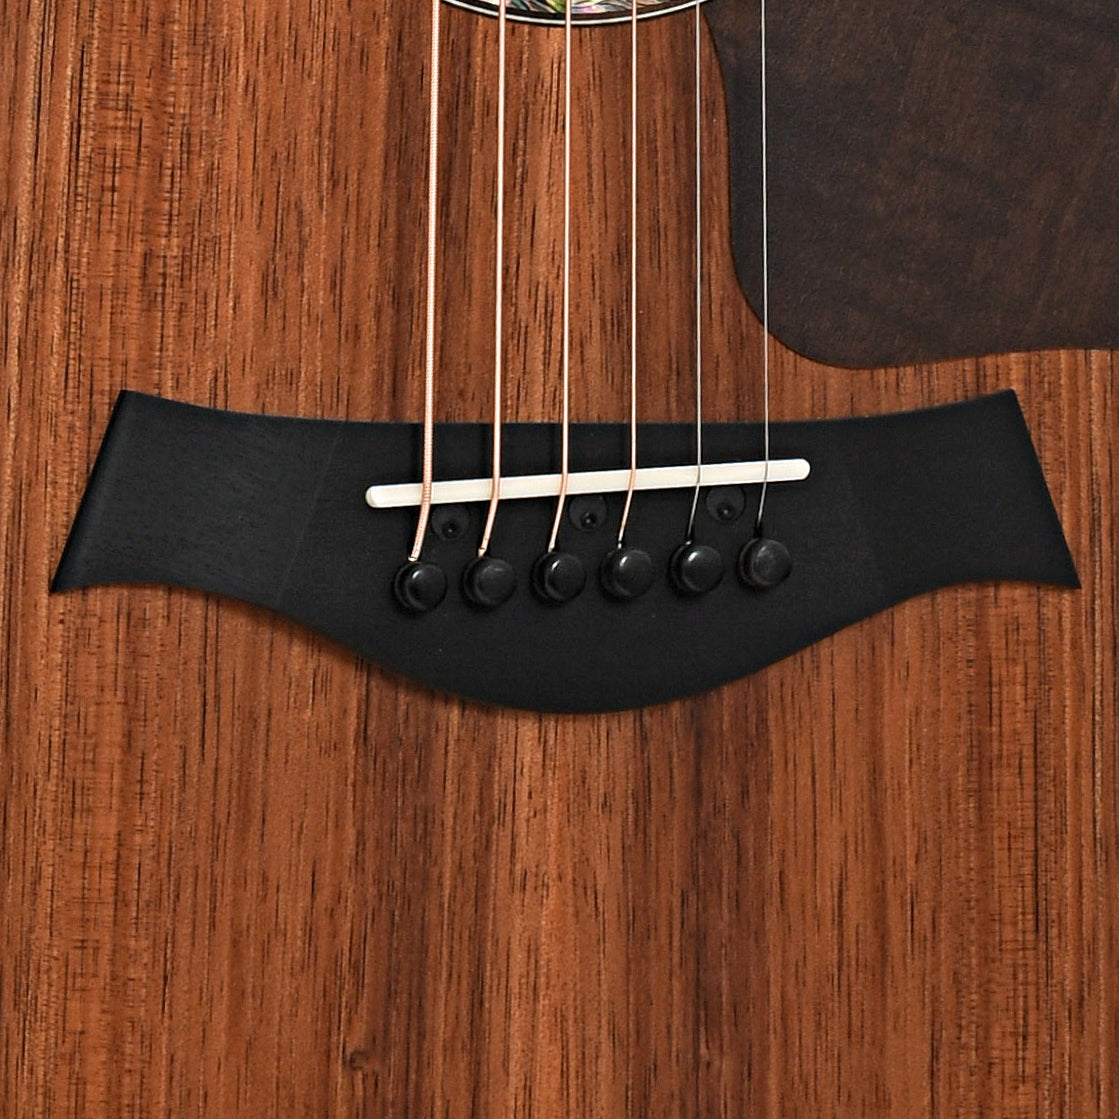 Bridge of Taylor 722ce Acoustic Guitar